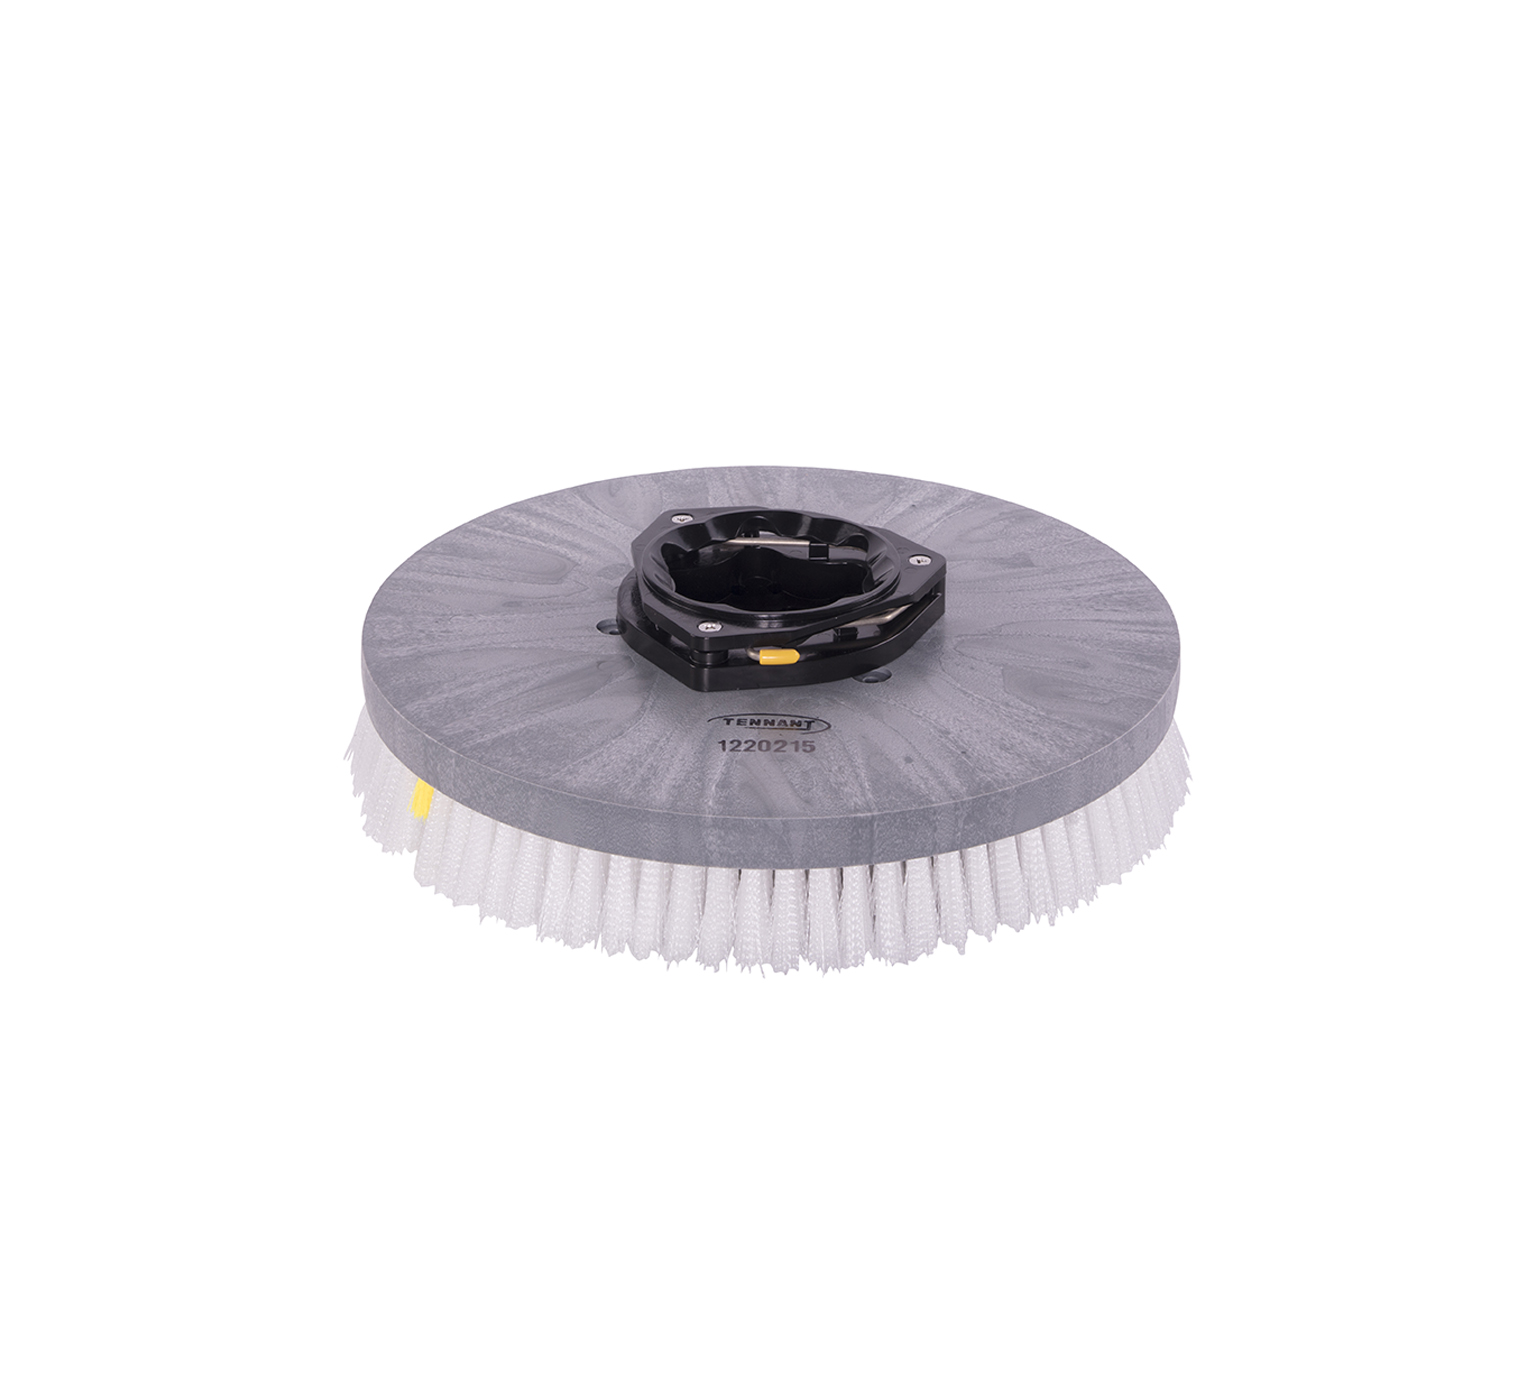 Assemblage de brosse de récurage à disque abrasif en nylon – 16 po / 406 mm  1220215